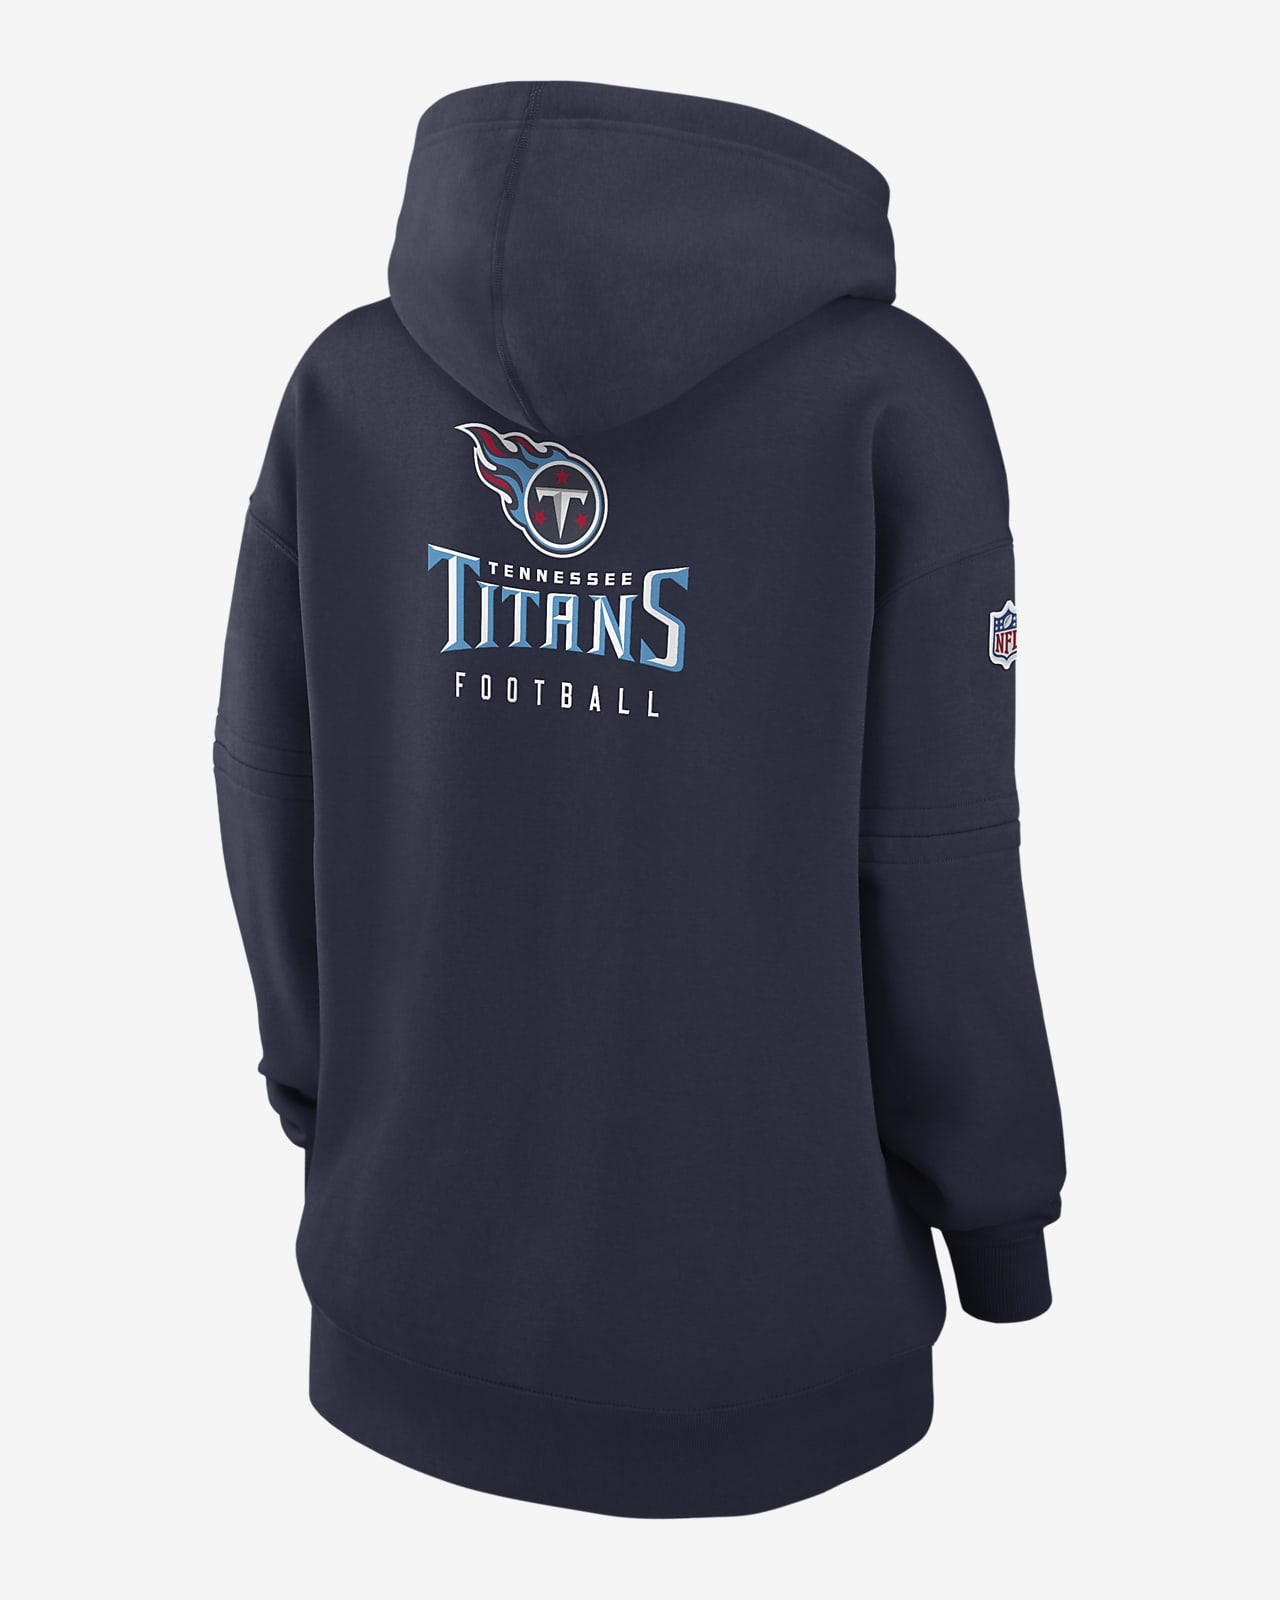 titans nfl hoodie